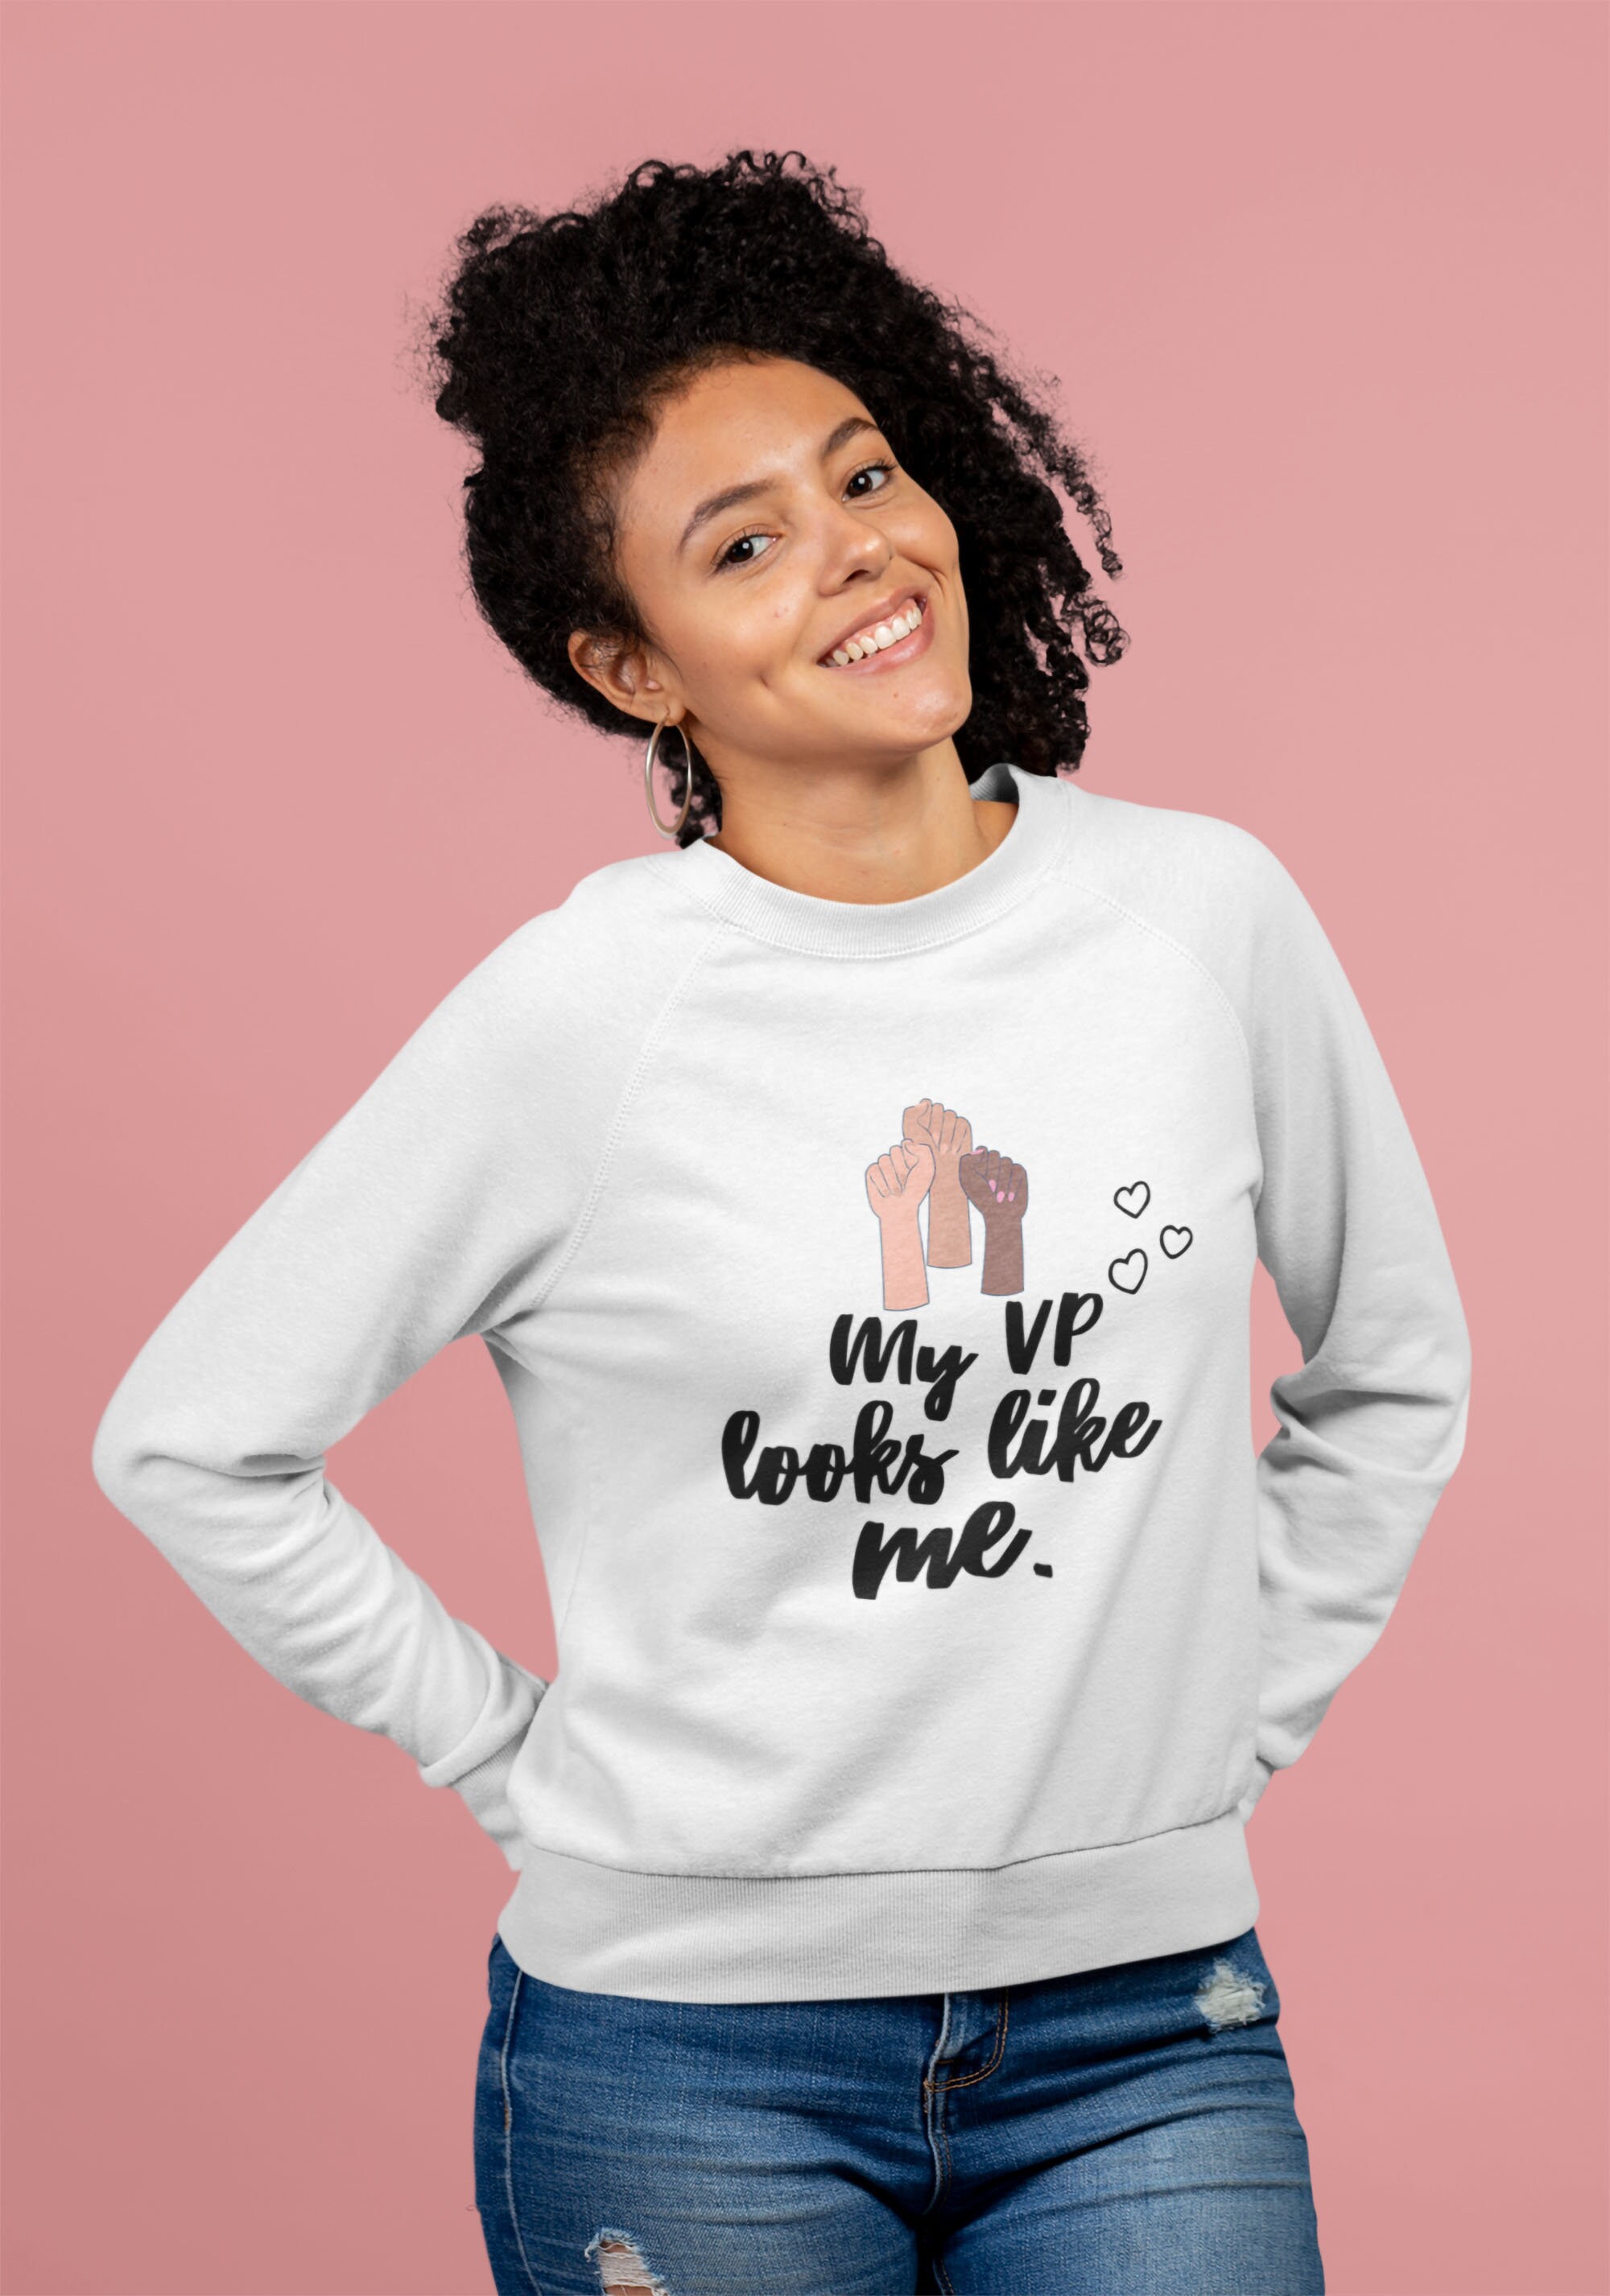 My VP Looks Like Me Shirt Kid Kamala Harris Sweatshirt 2020 | Etsy